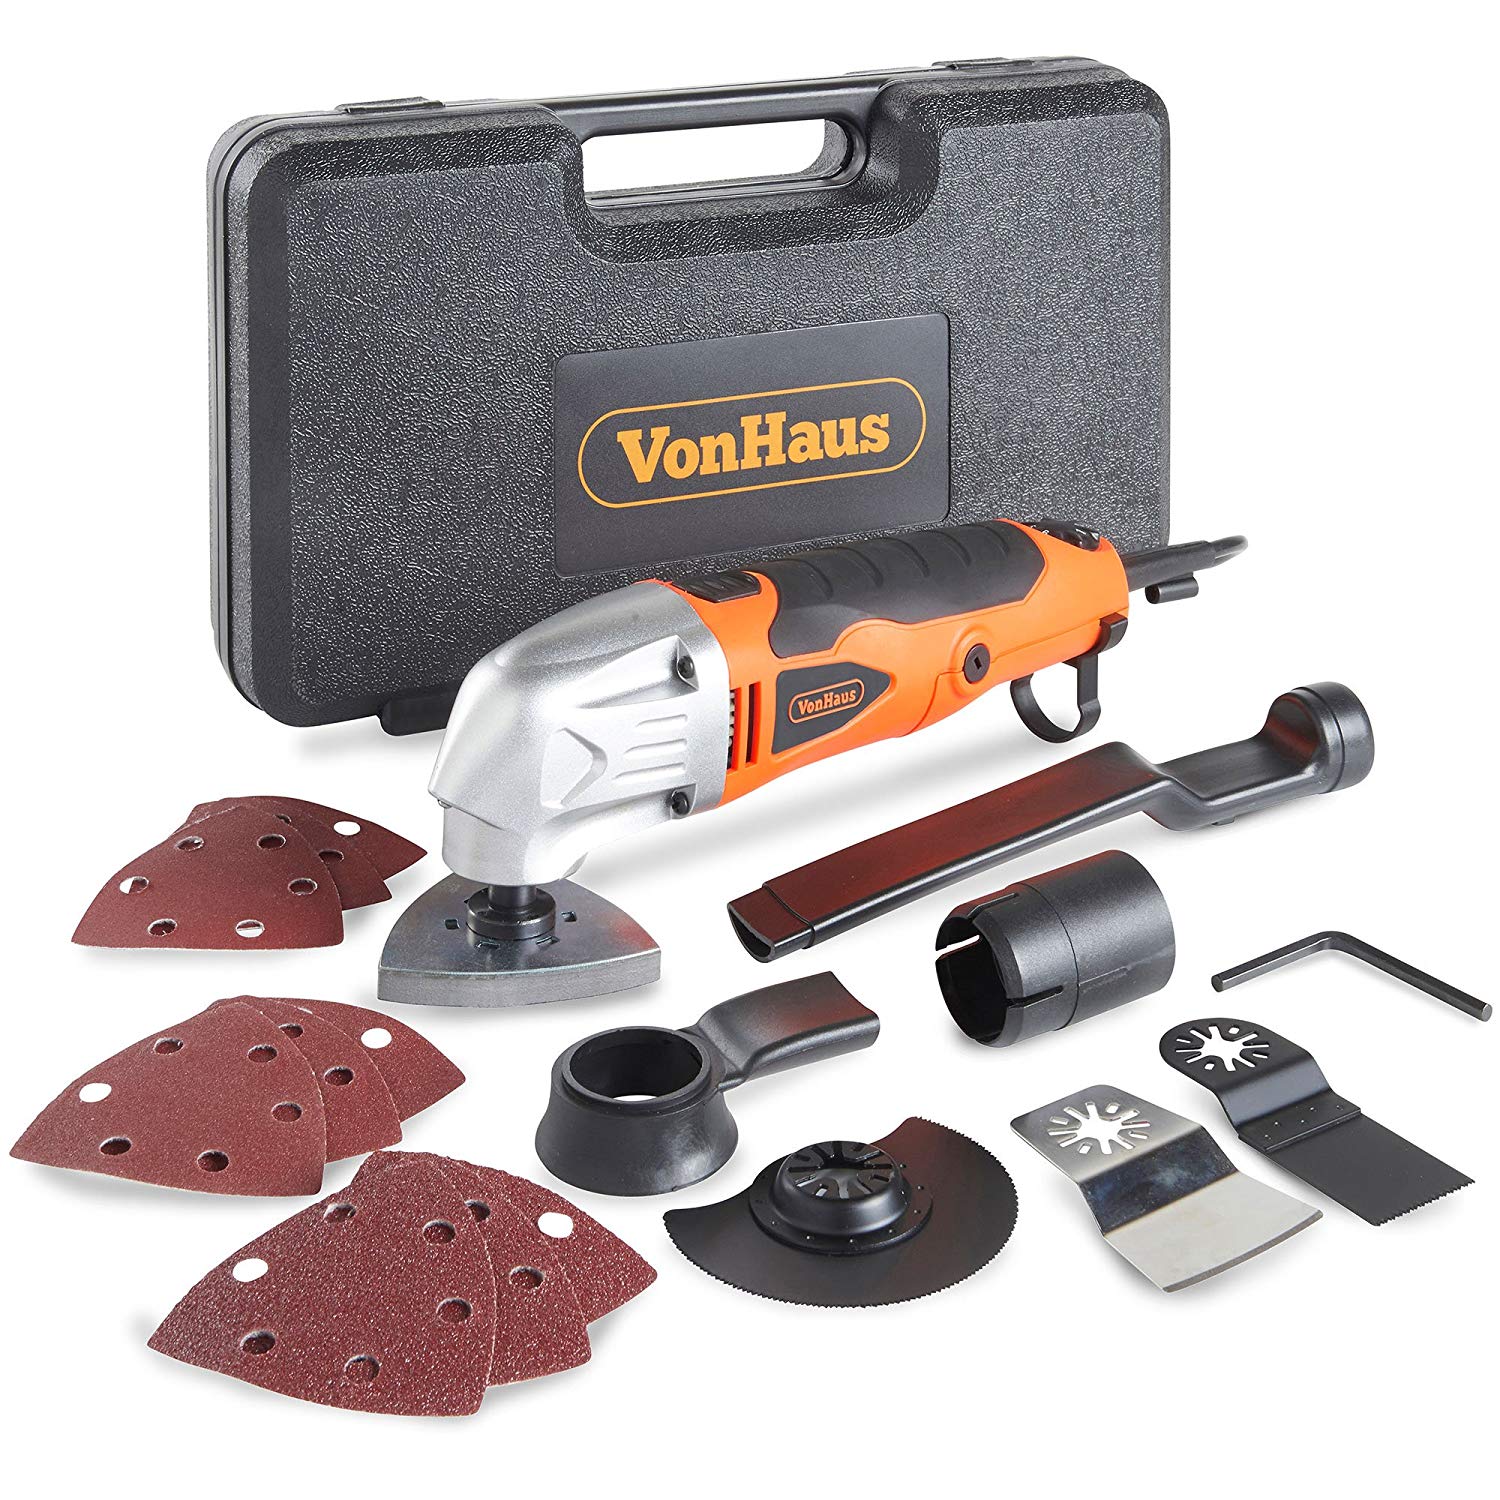 VonHaus Multi-Purpose Oscillating Tool 15/275